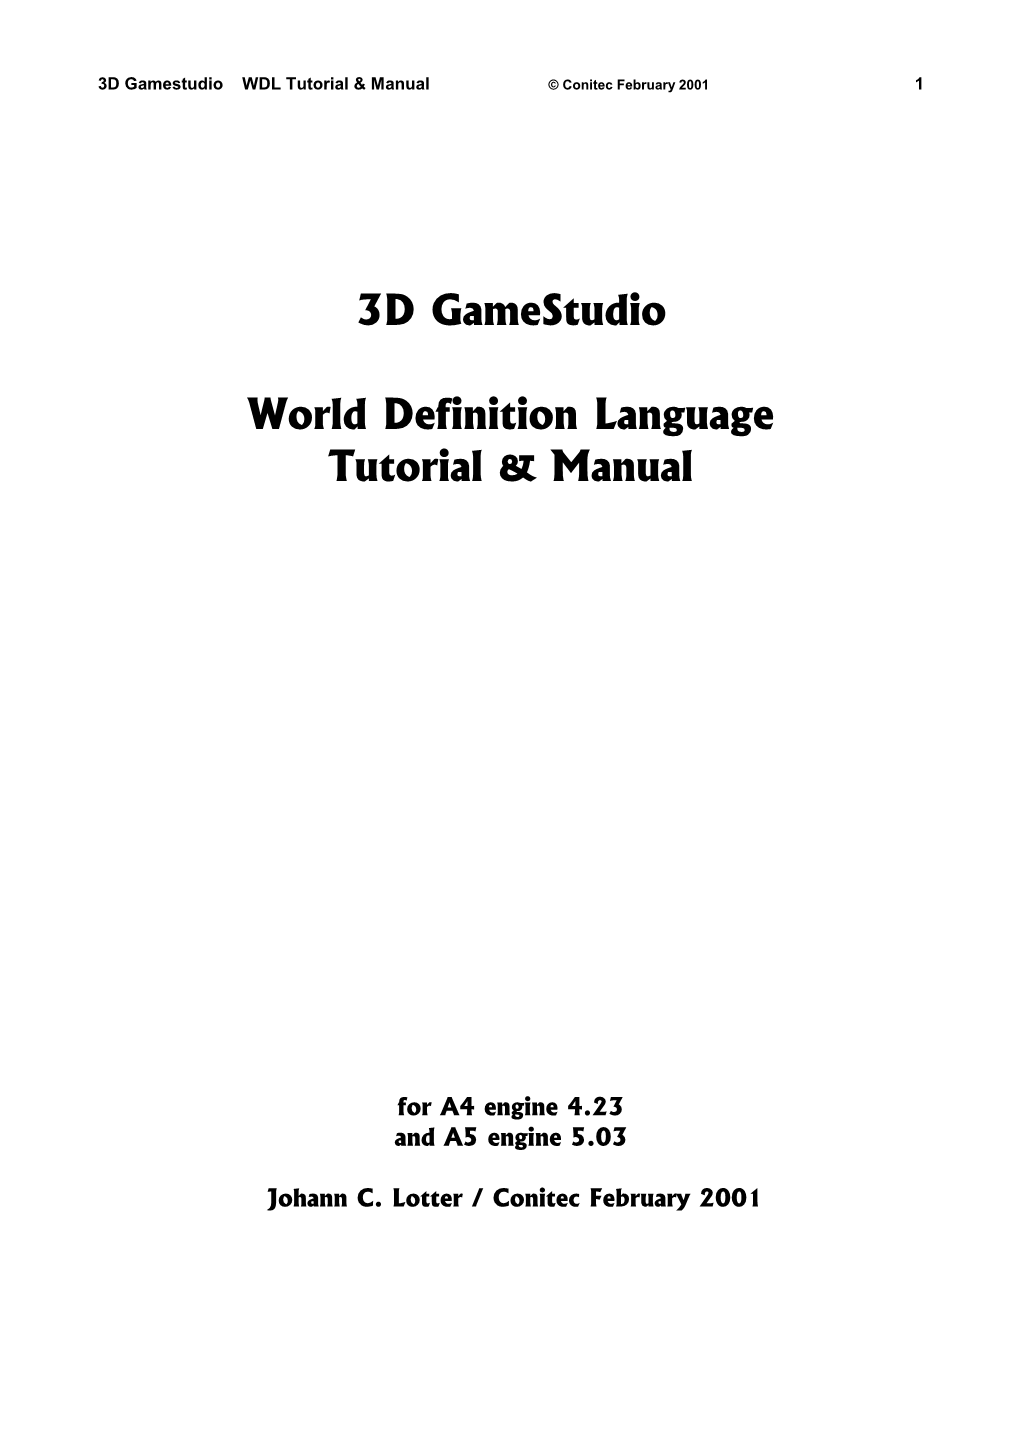 3D Gamestudio Manual